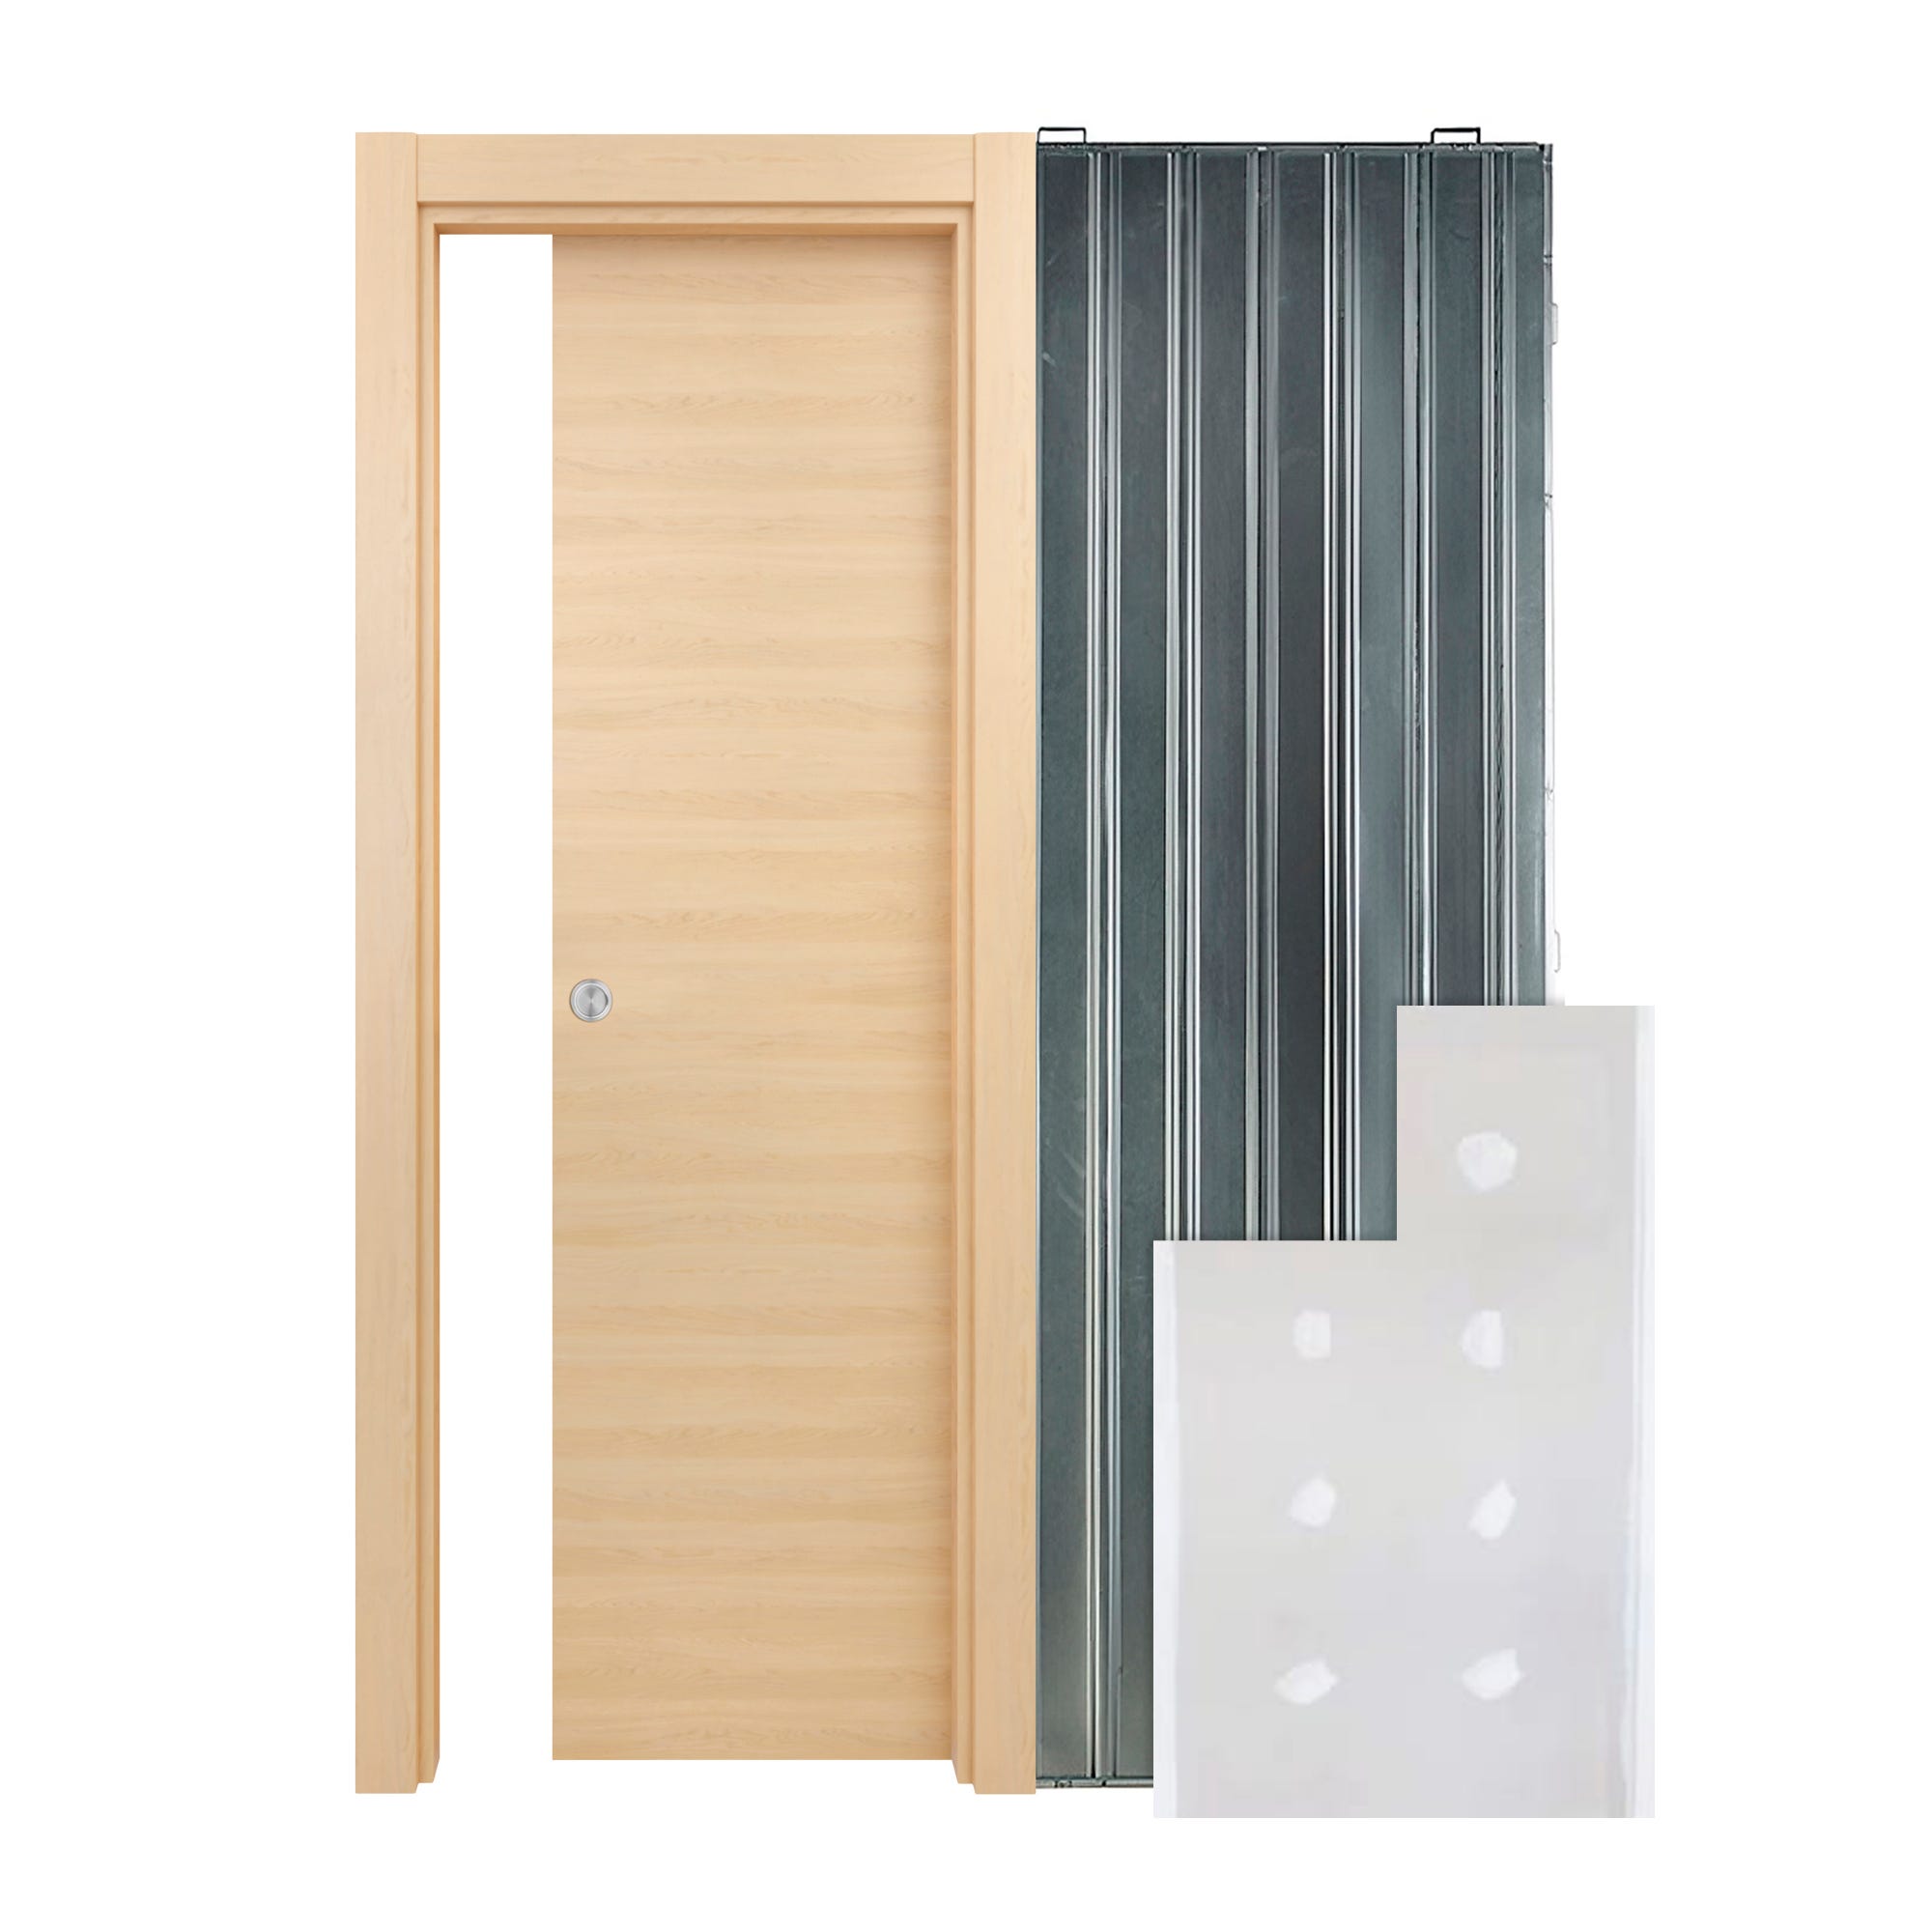 Kit puerta de madera melaminica con marco veta vertical color